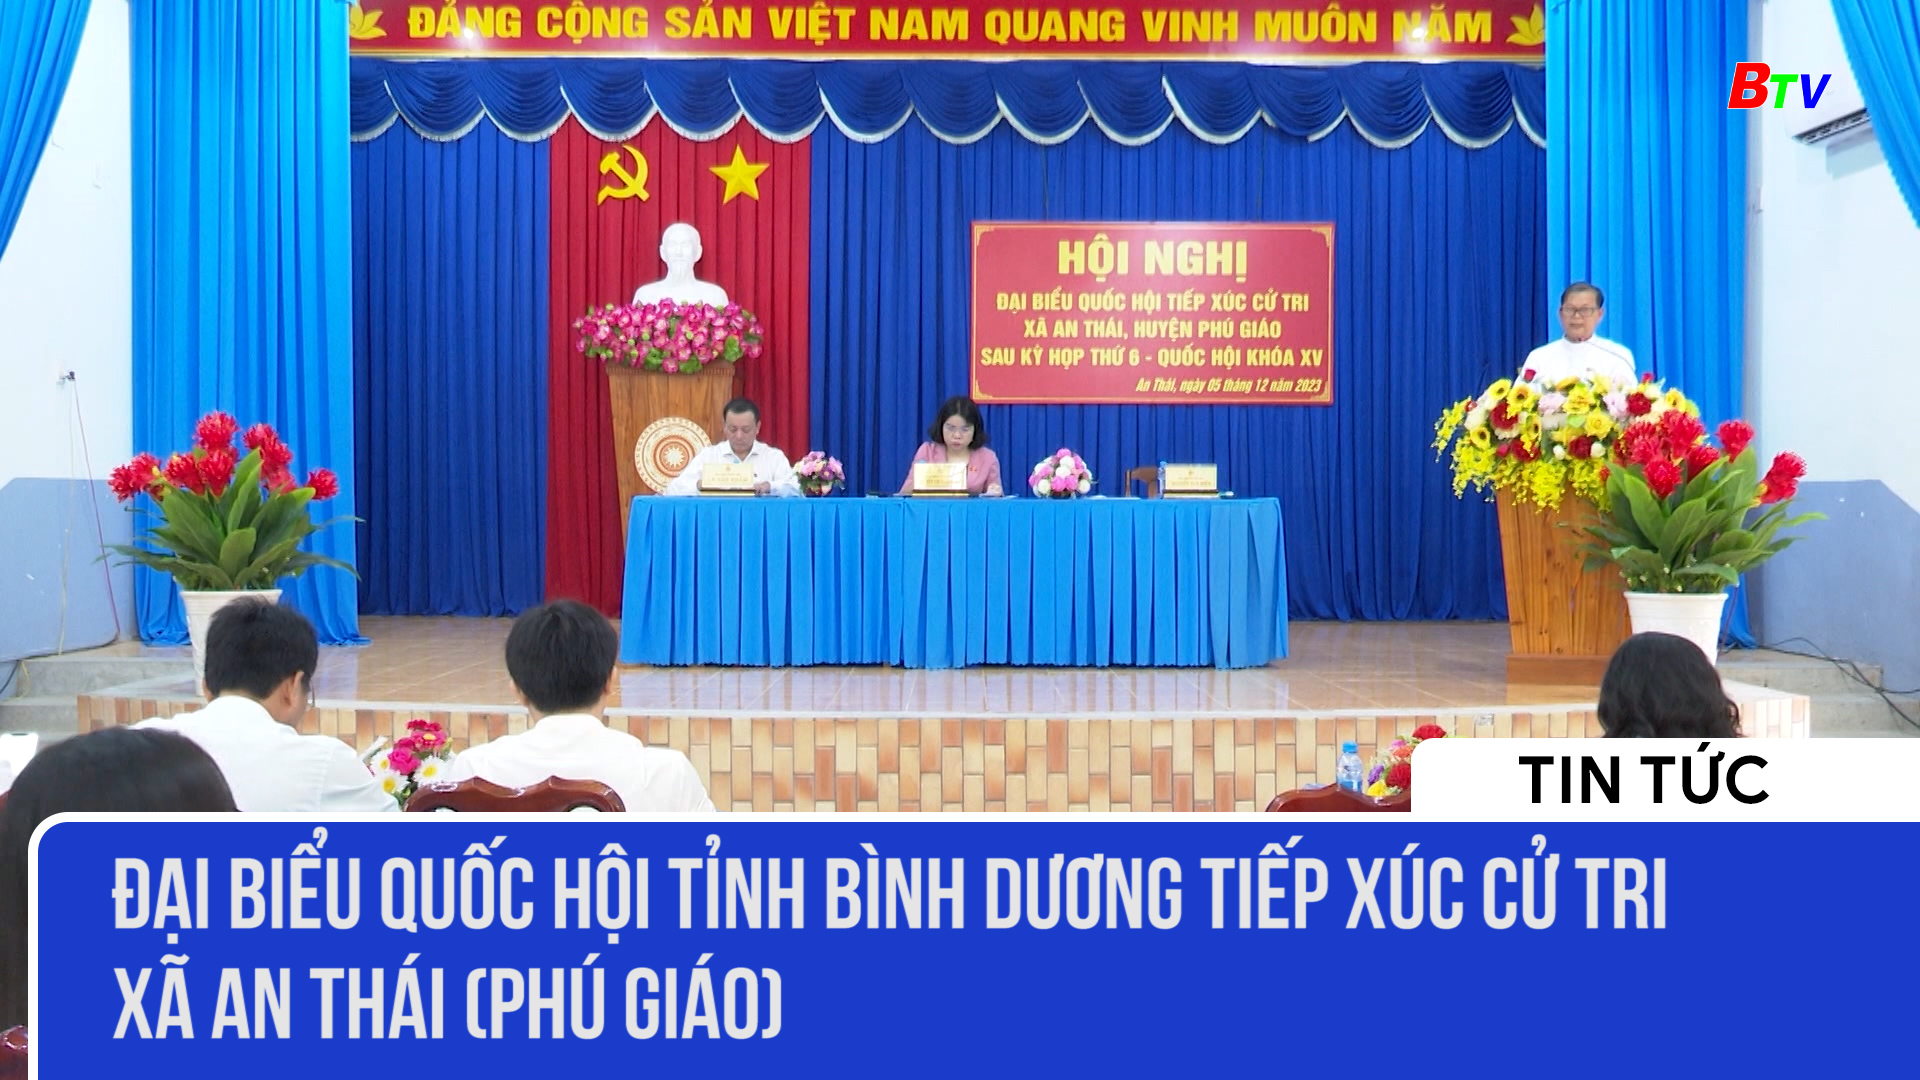 Đại biểu Quốc hội tỉnh Bình Dương tiếp xúc cử tri xã An Thái (Phú Giáo)